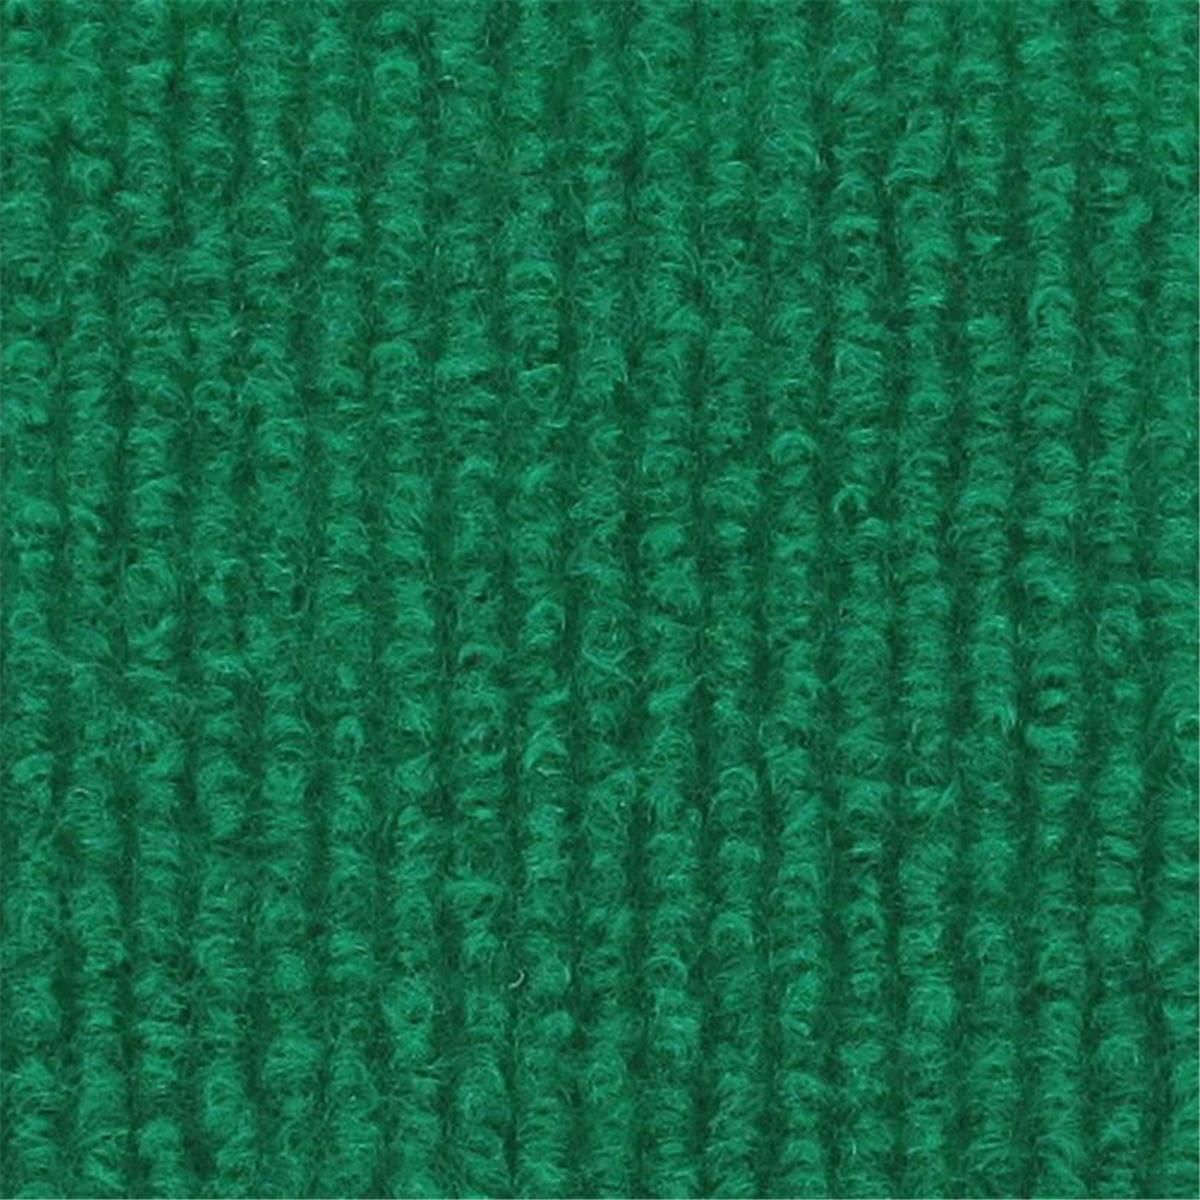 Messeboden Rips-Nadelvlies EXPOLINE Buff Coloured 0956 100qm ohne Schutzfolie - Rollenbreite 200 cm